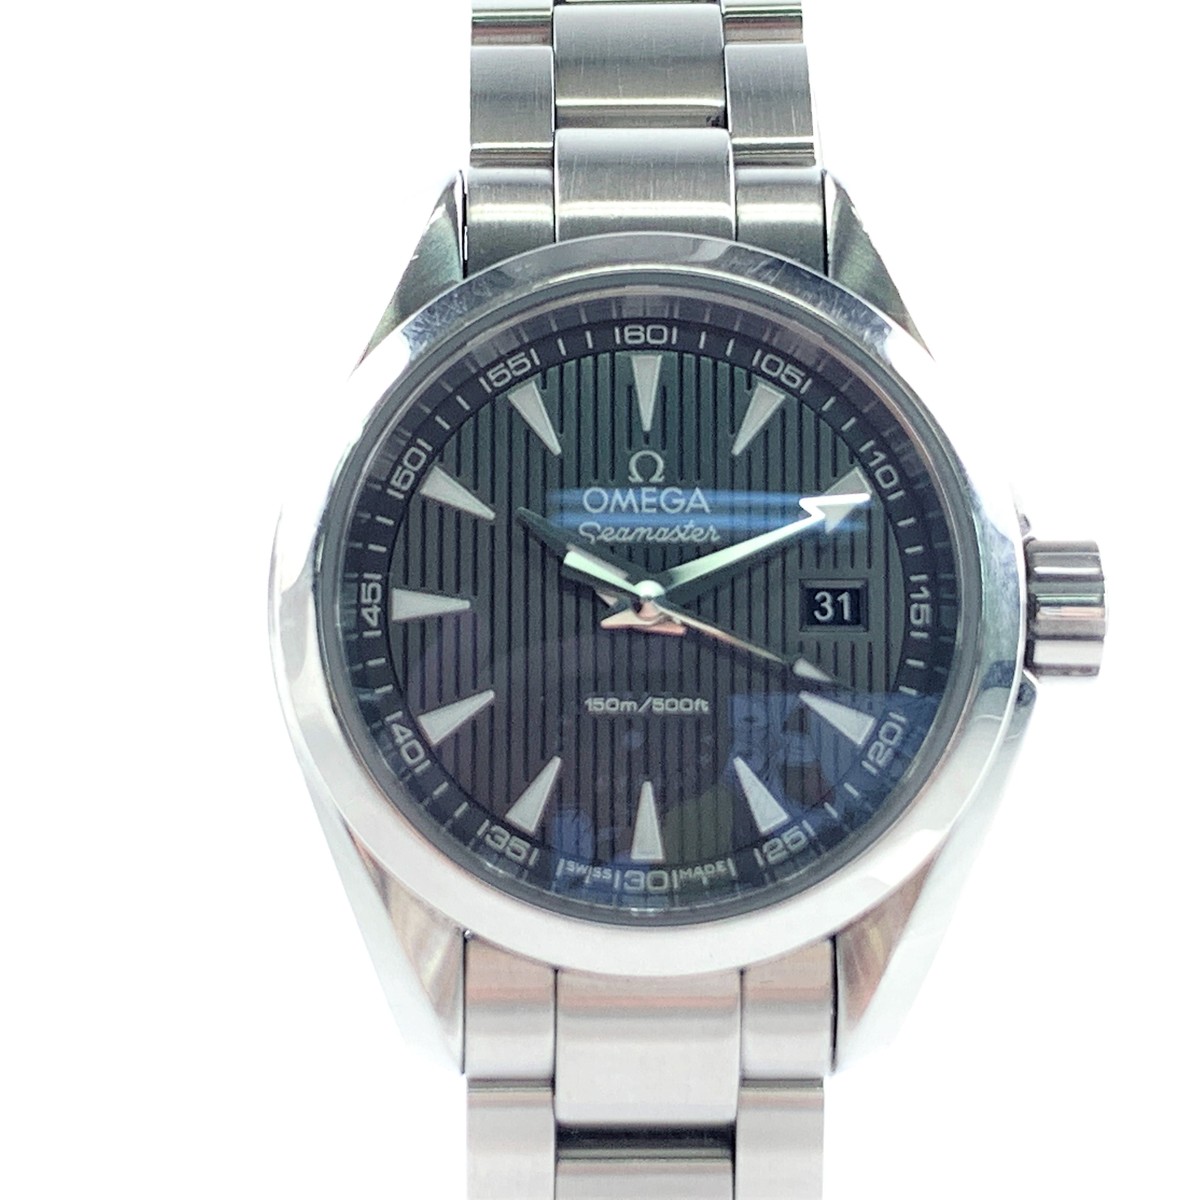 オメガの231.10.30.60.06.001 シーマスター アクアテラ クオーツ腕時計の買取実績です。